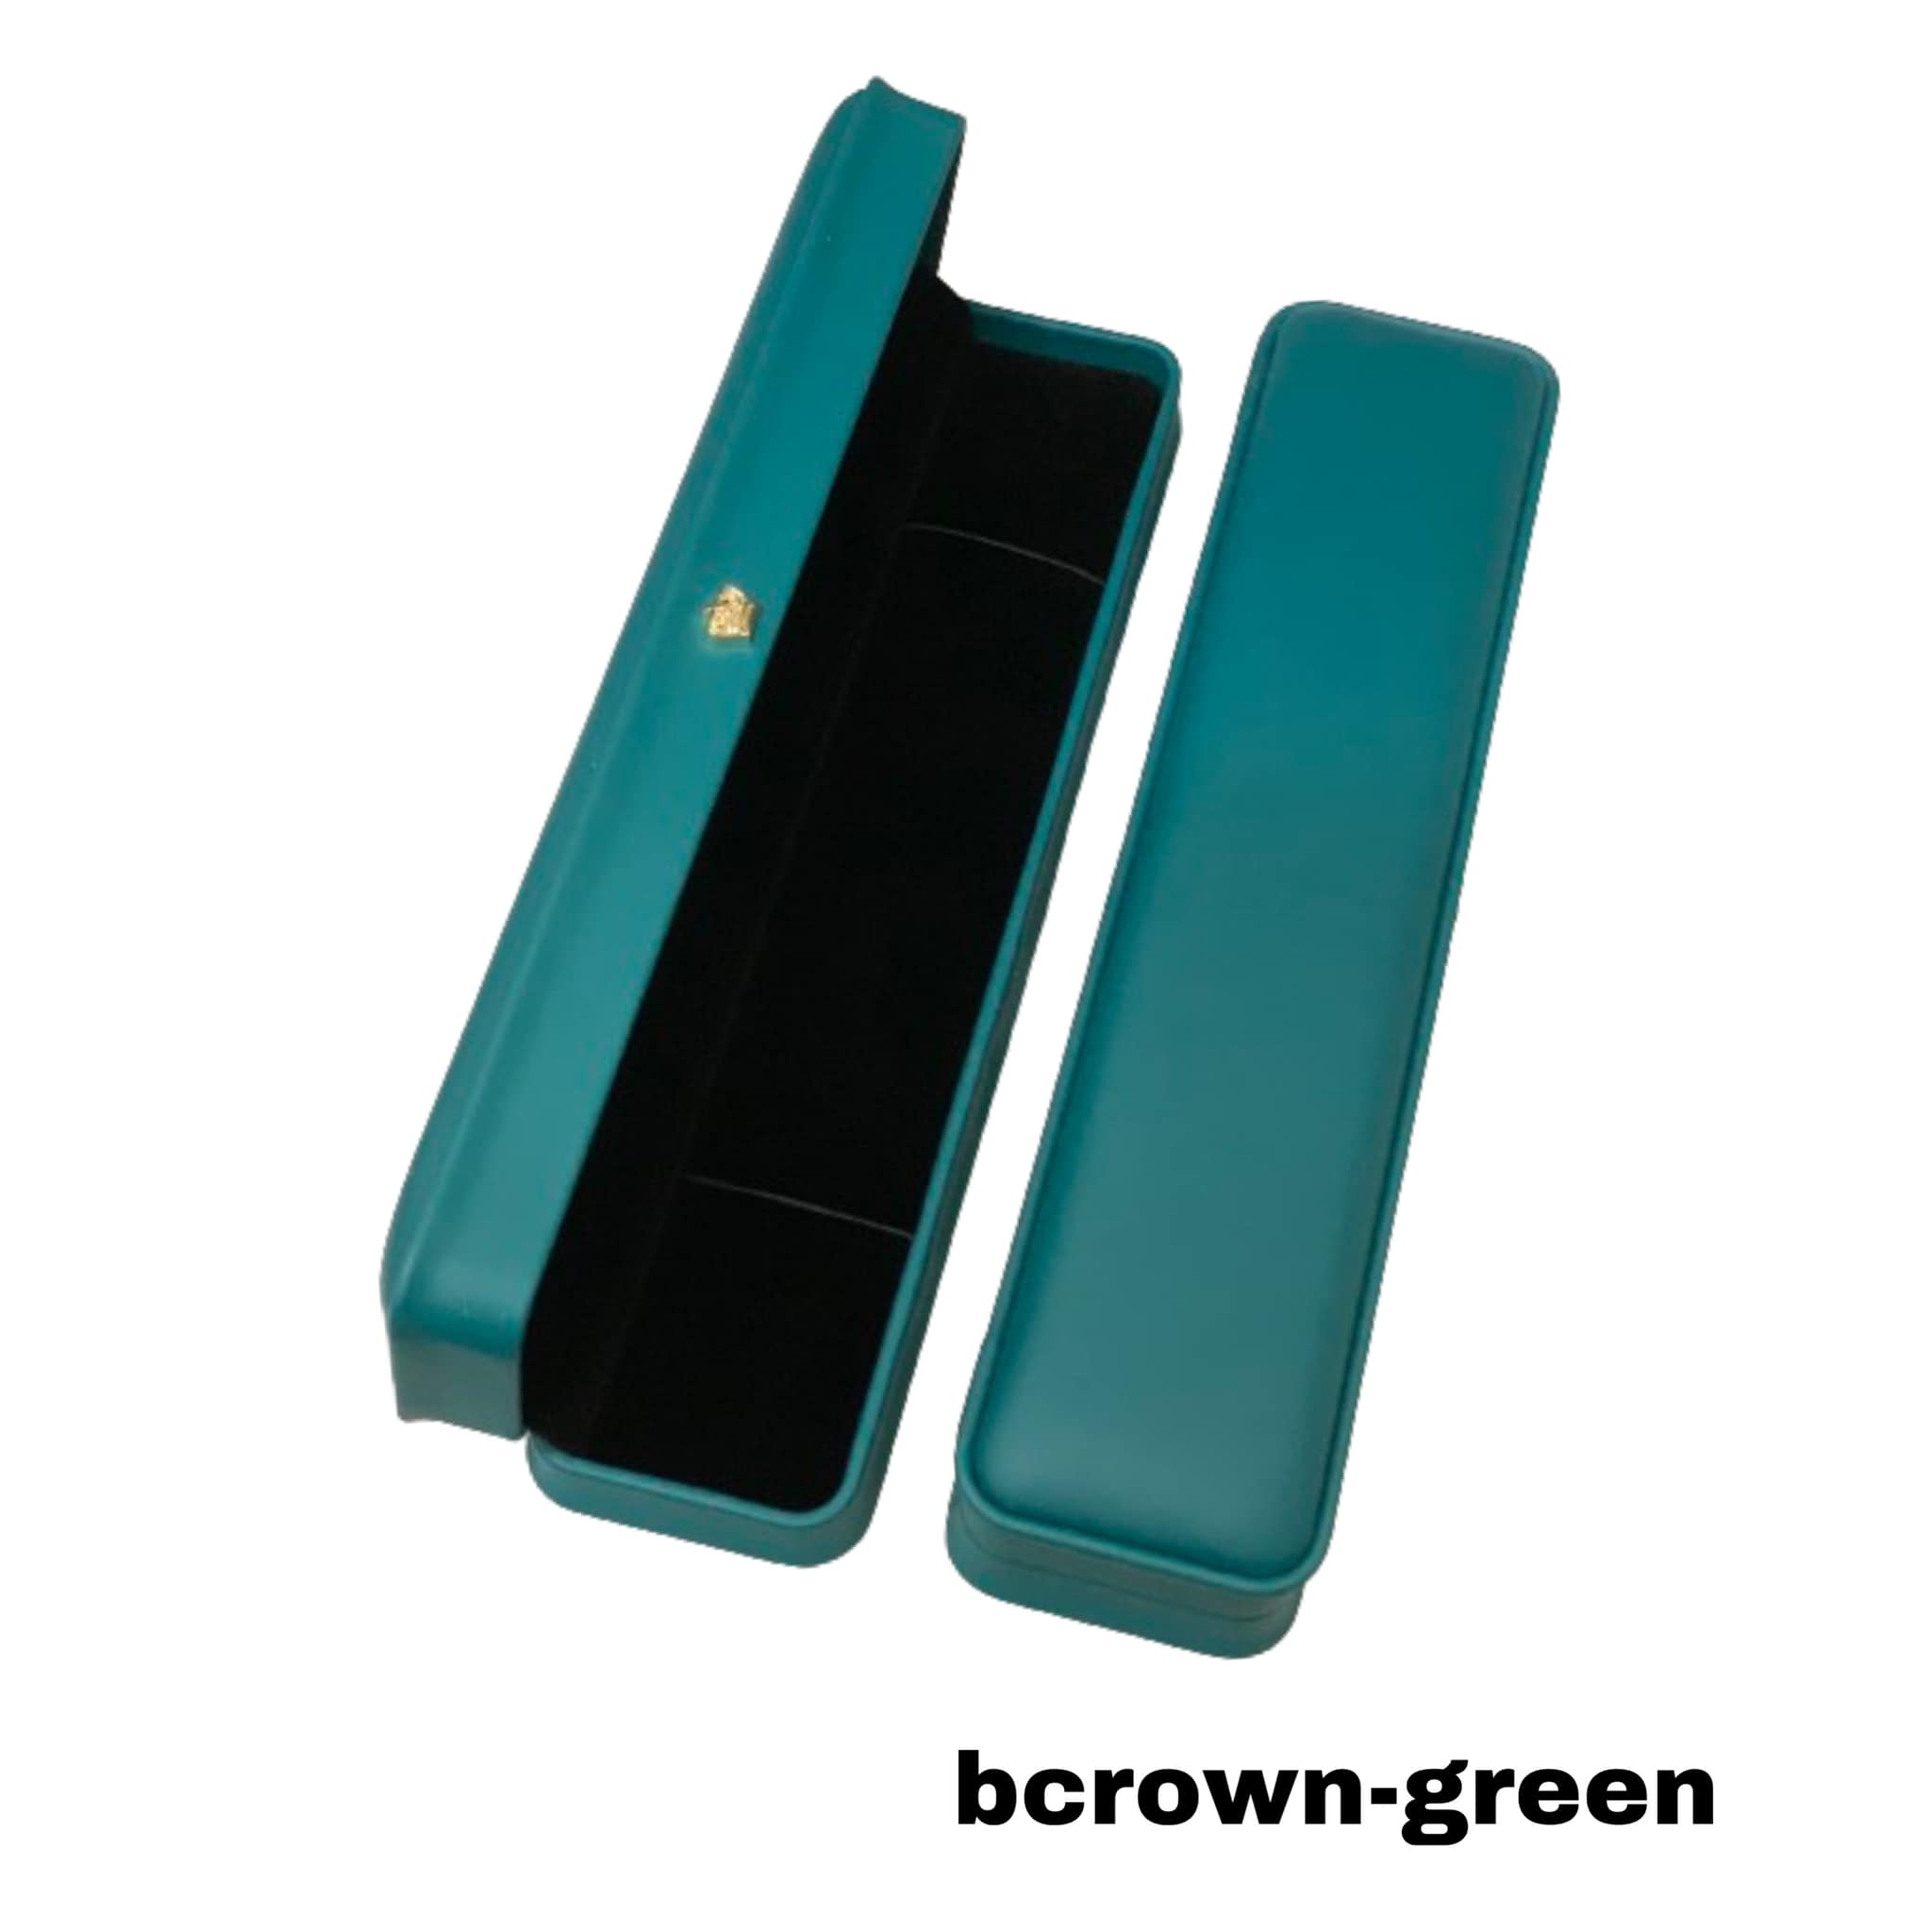 bcrown-green